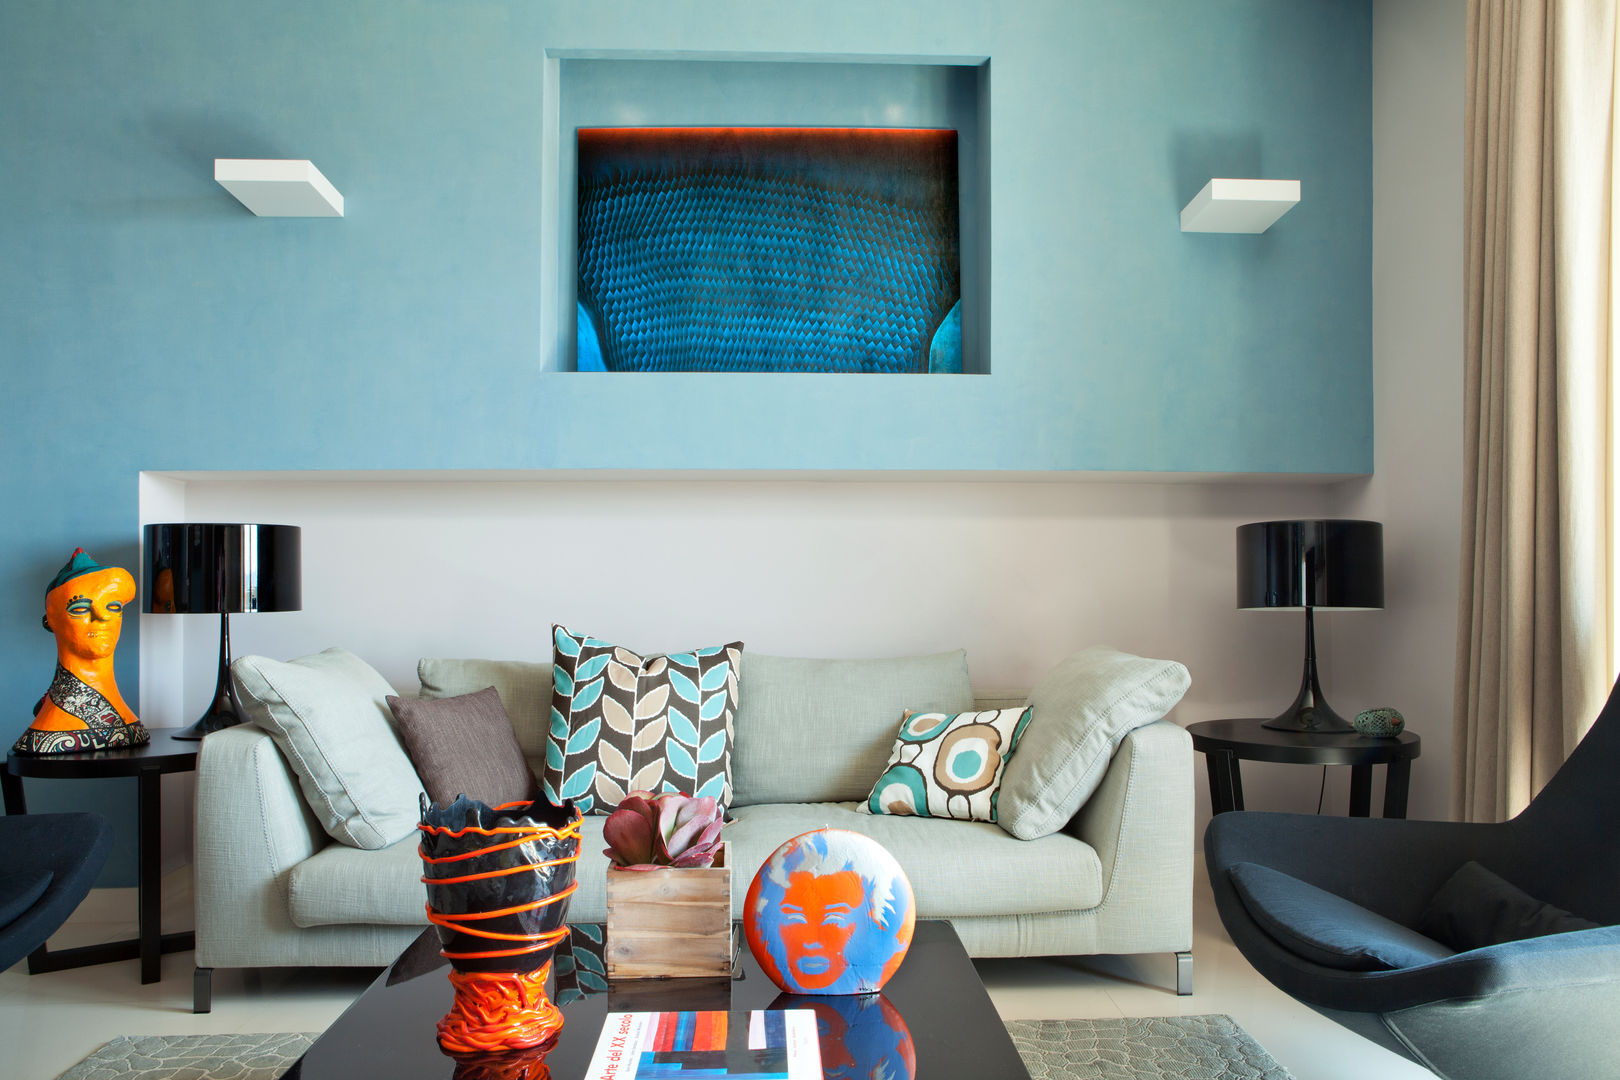 La casa ideale per un single, giovane e colorata, PDV studio di progettazione PDV studio di progettazione Eclectic style living room Sofas & armchairs